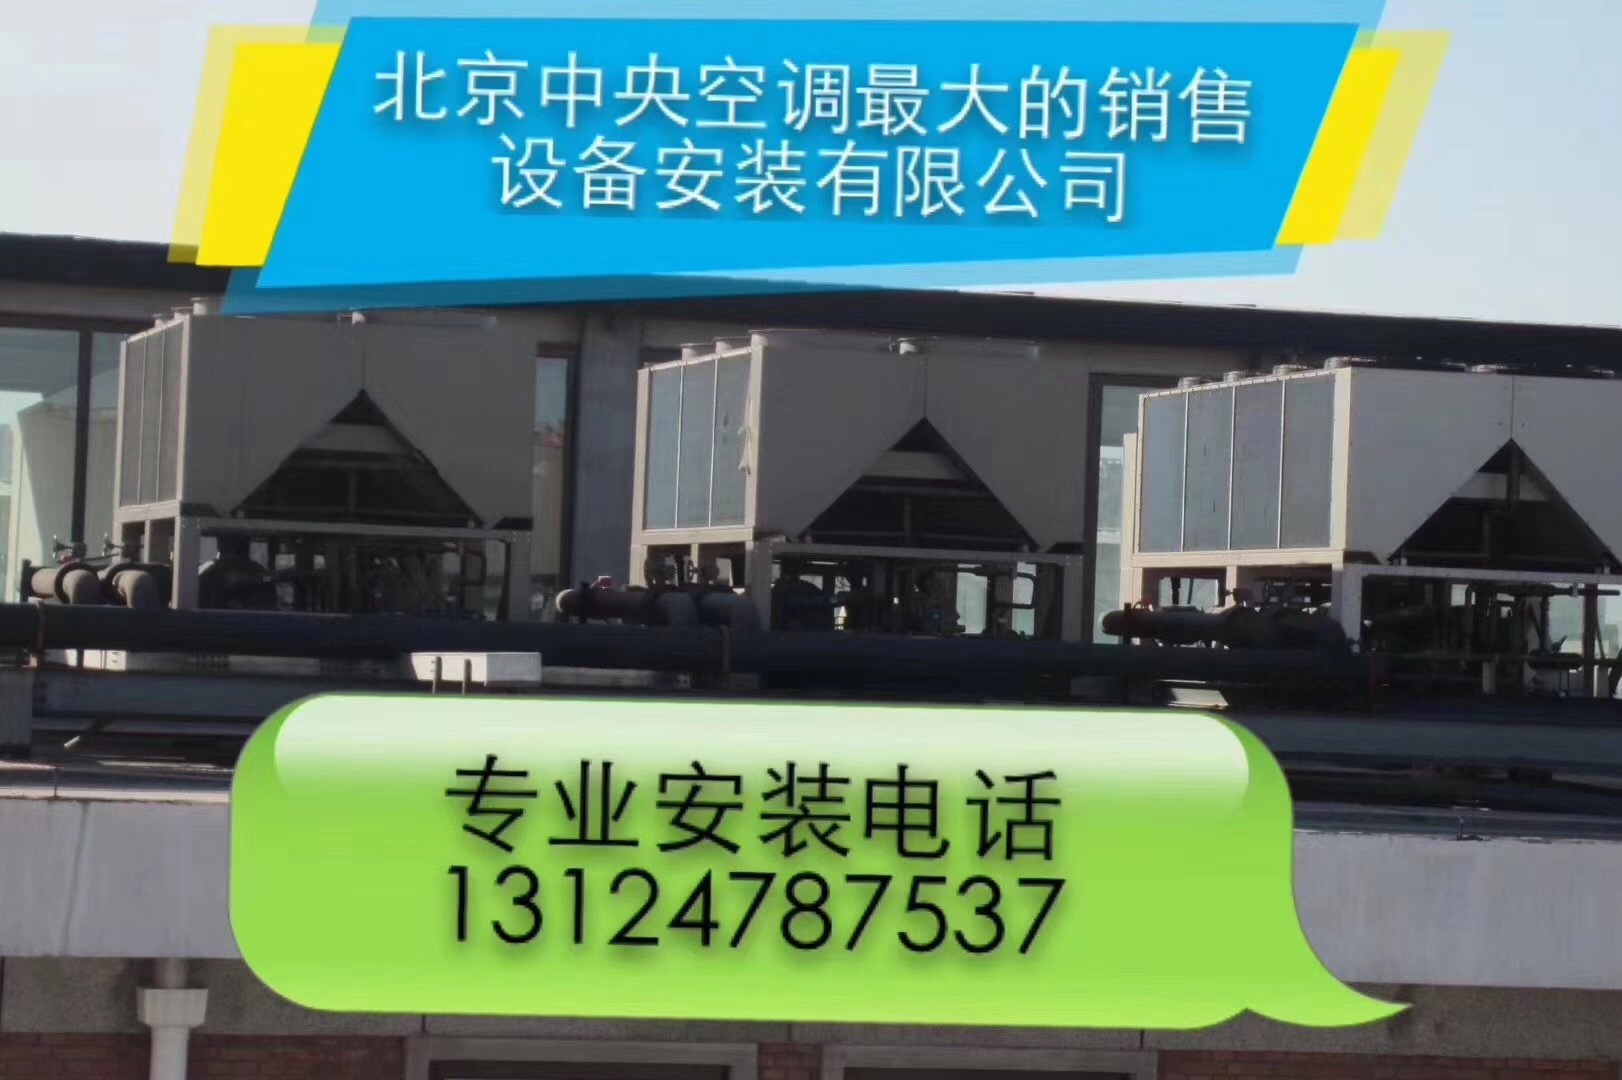 北京辰远机电设备工程有限公司